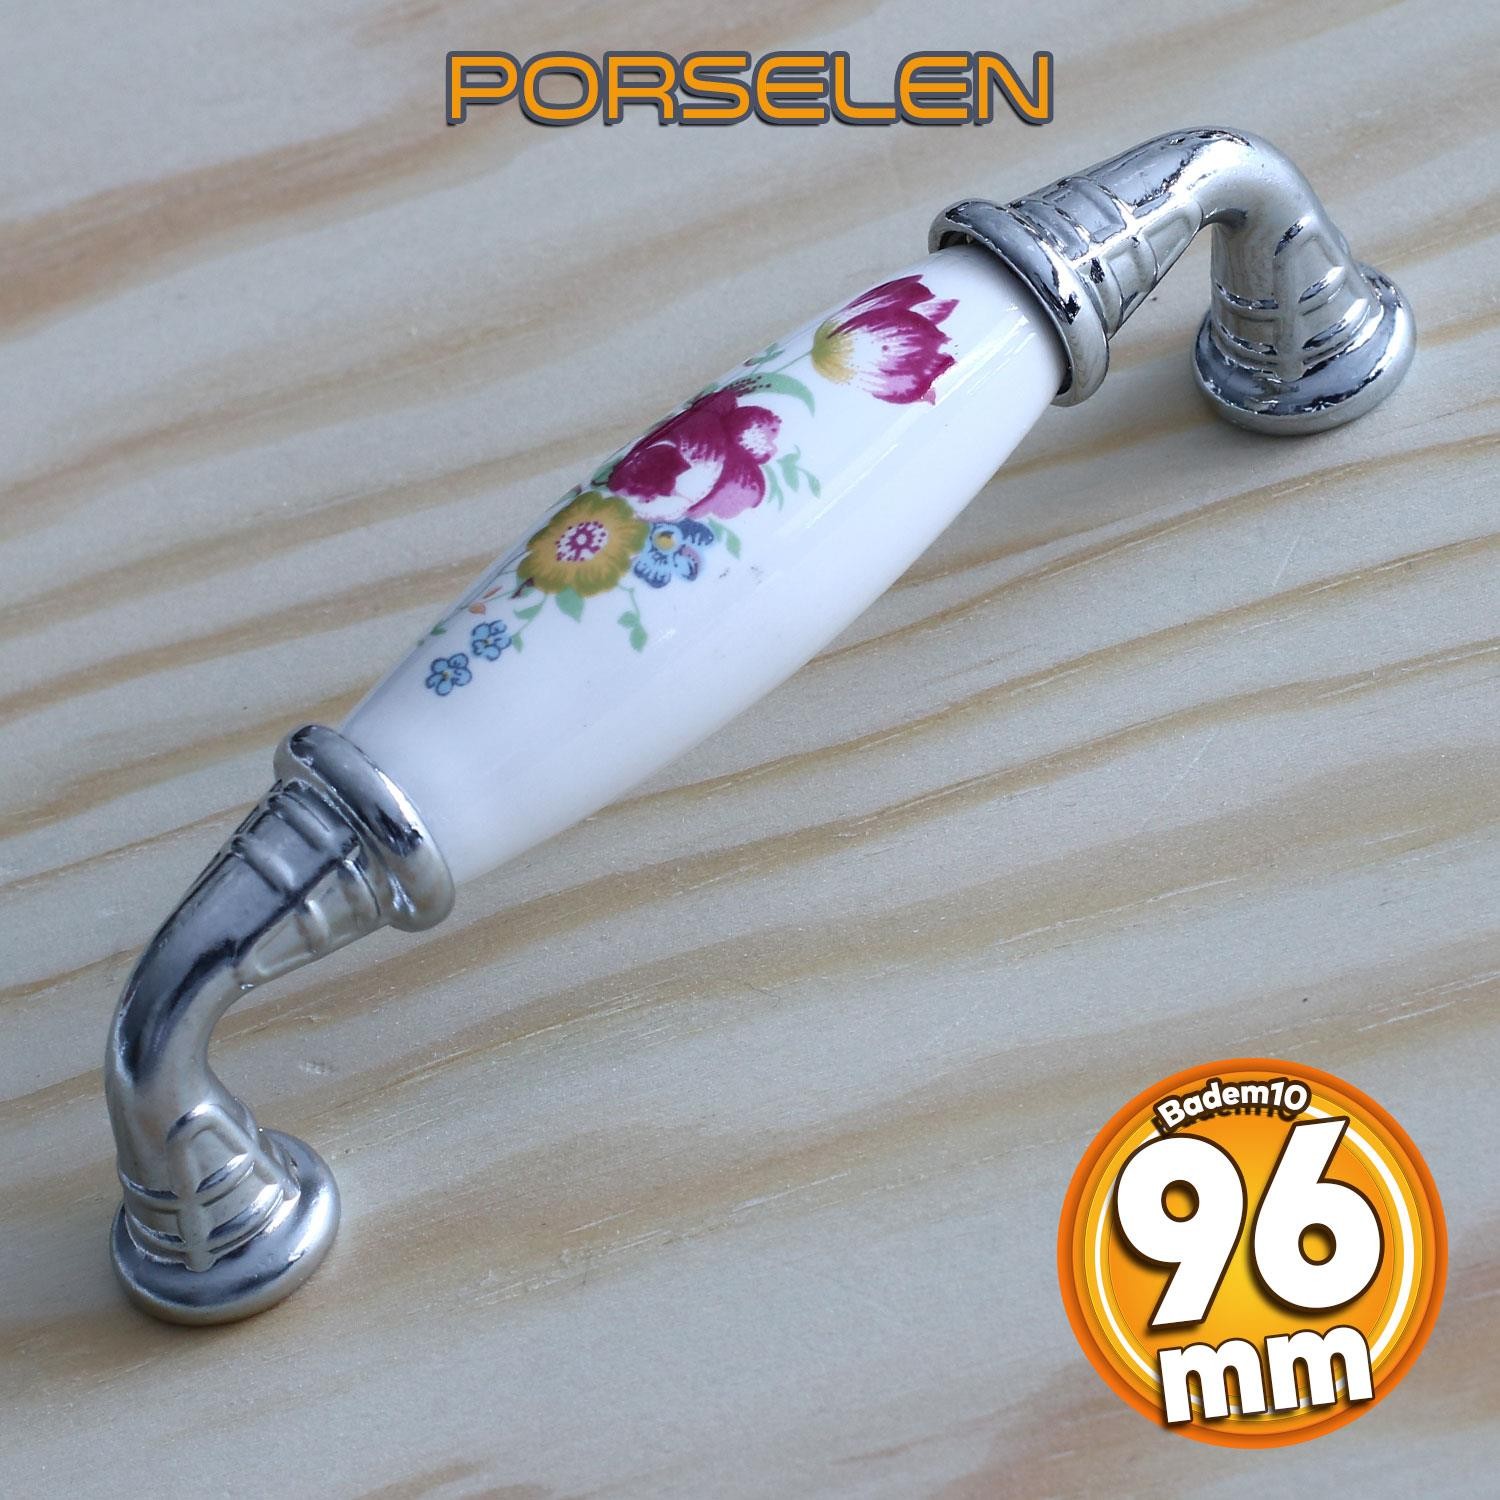 Gerçek Porselen Kulp Çiçek Desen 96 mm Mobilya Mutfak Kulplar Dolabı Çekmece Dolap Kapak Kulpu Beyaz